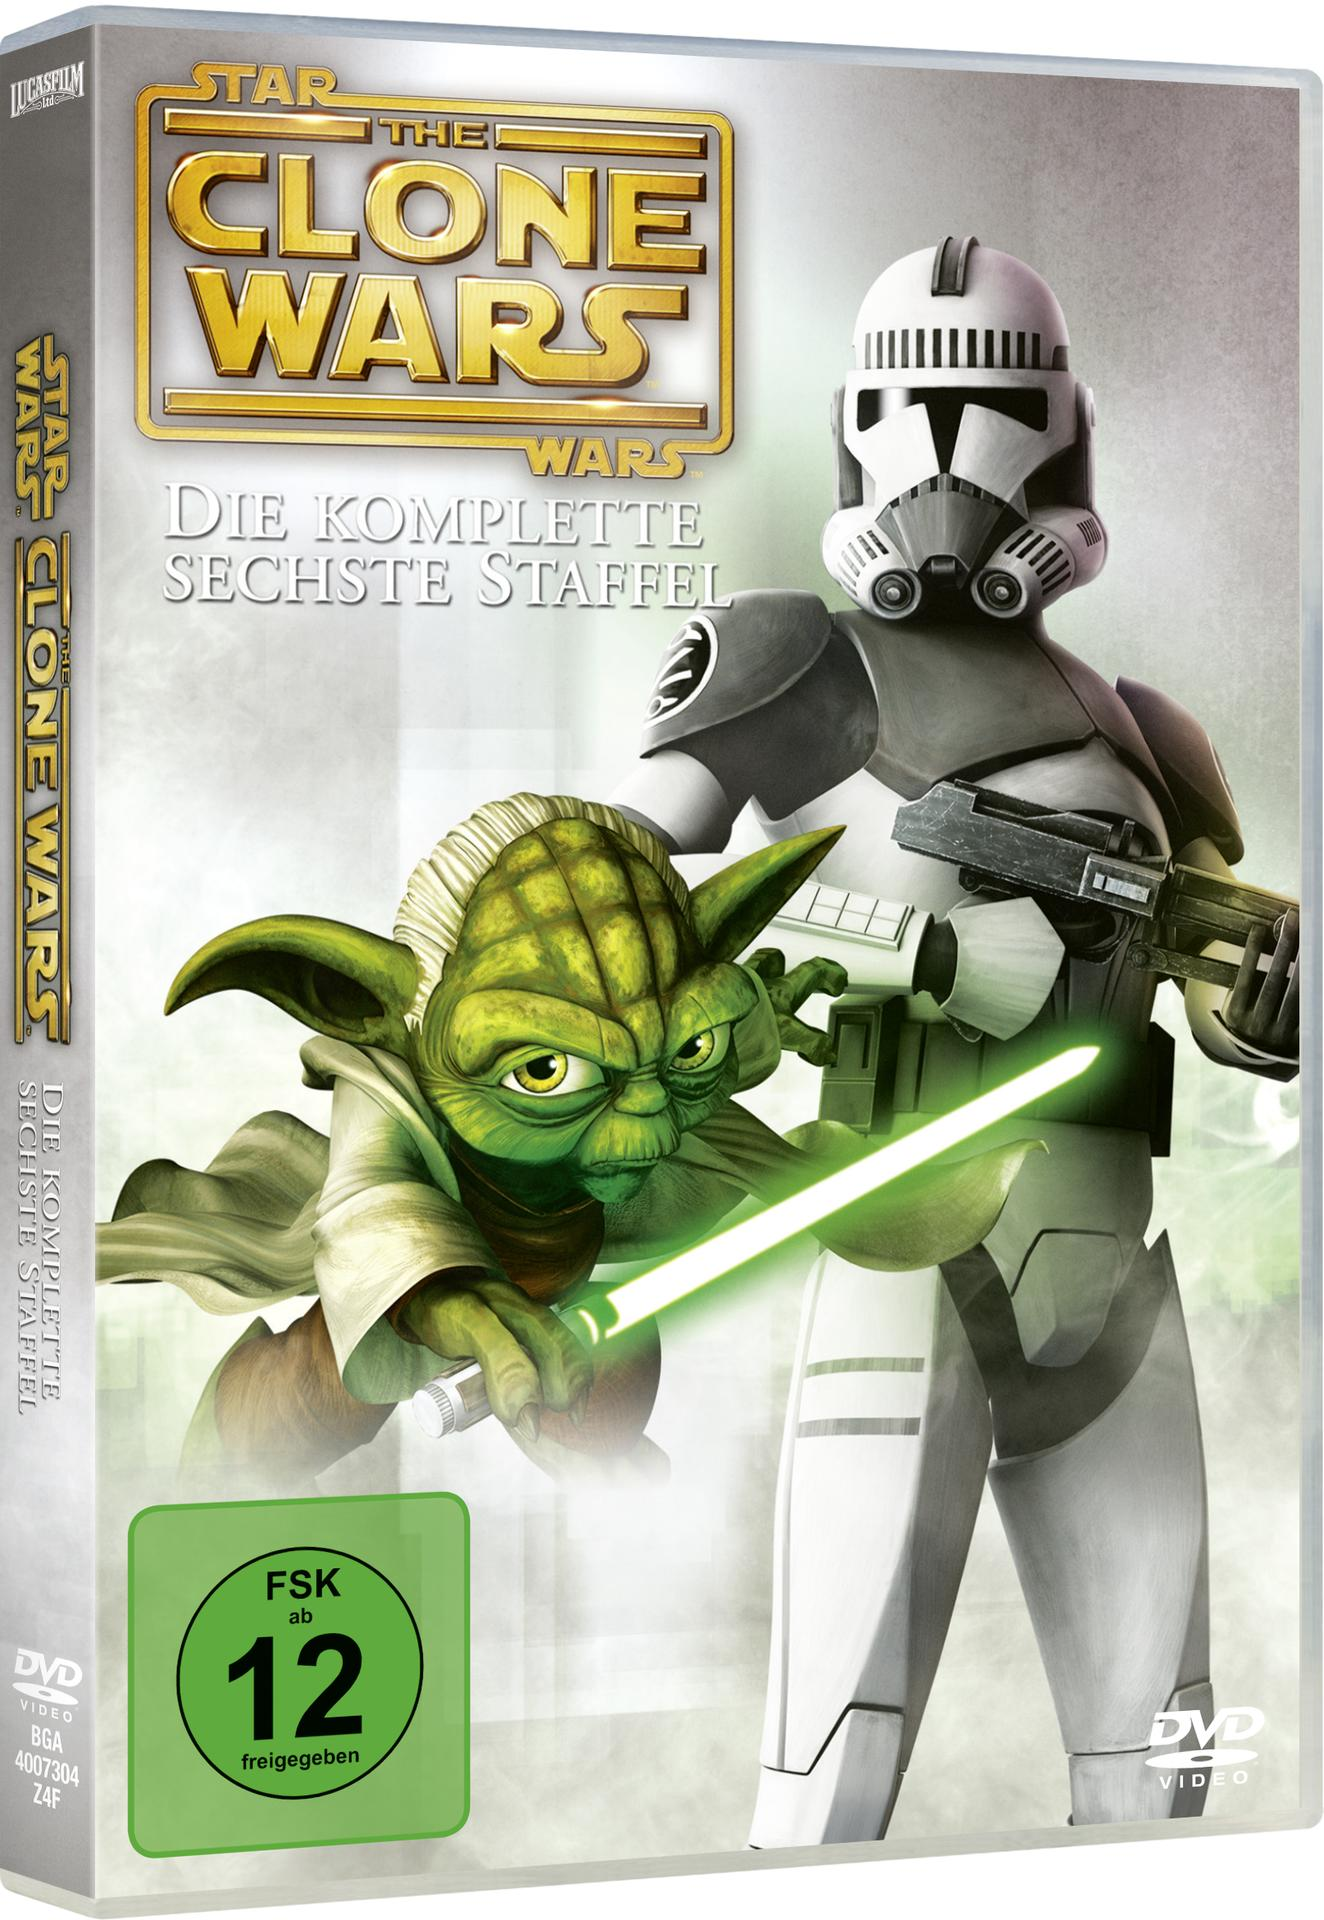 Wars The DVD Wars: 6 Star Staffel Clone -